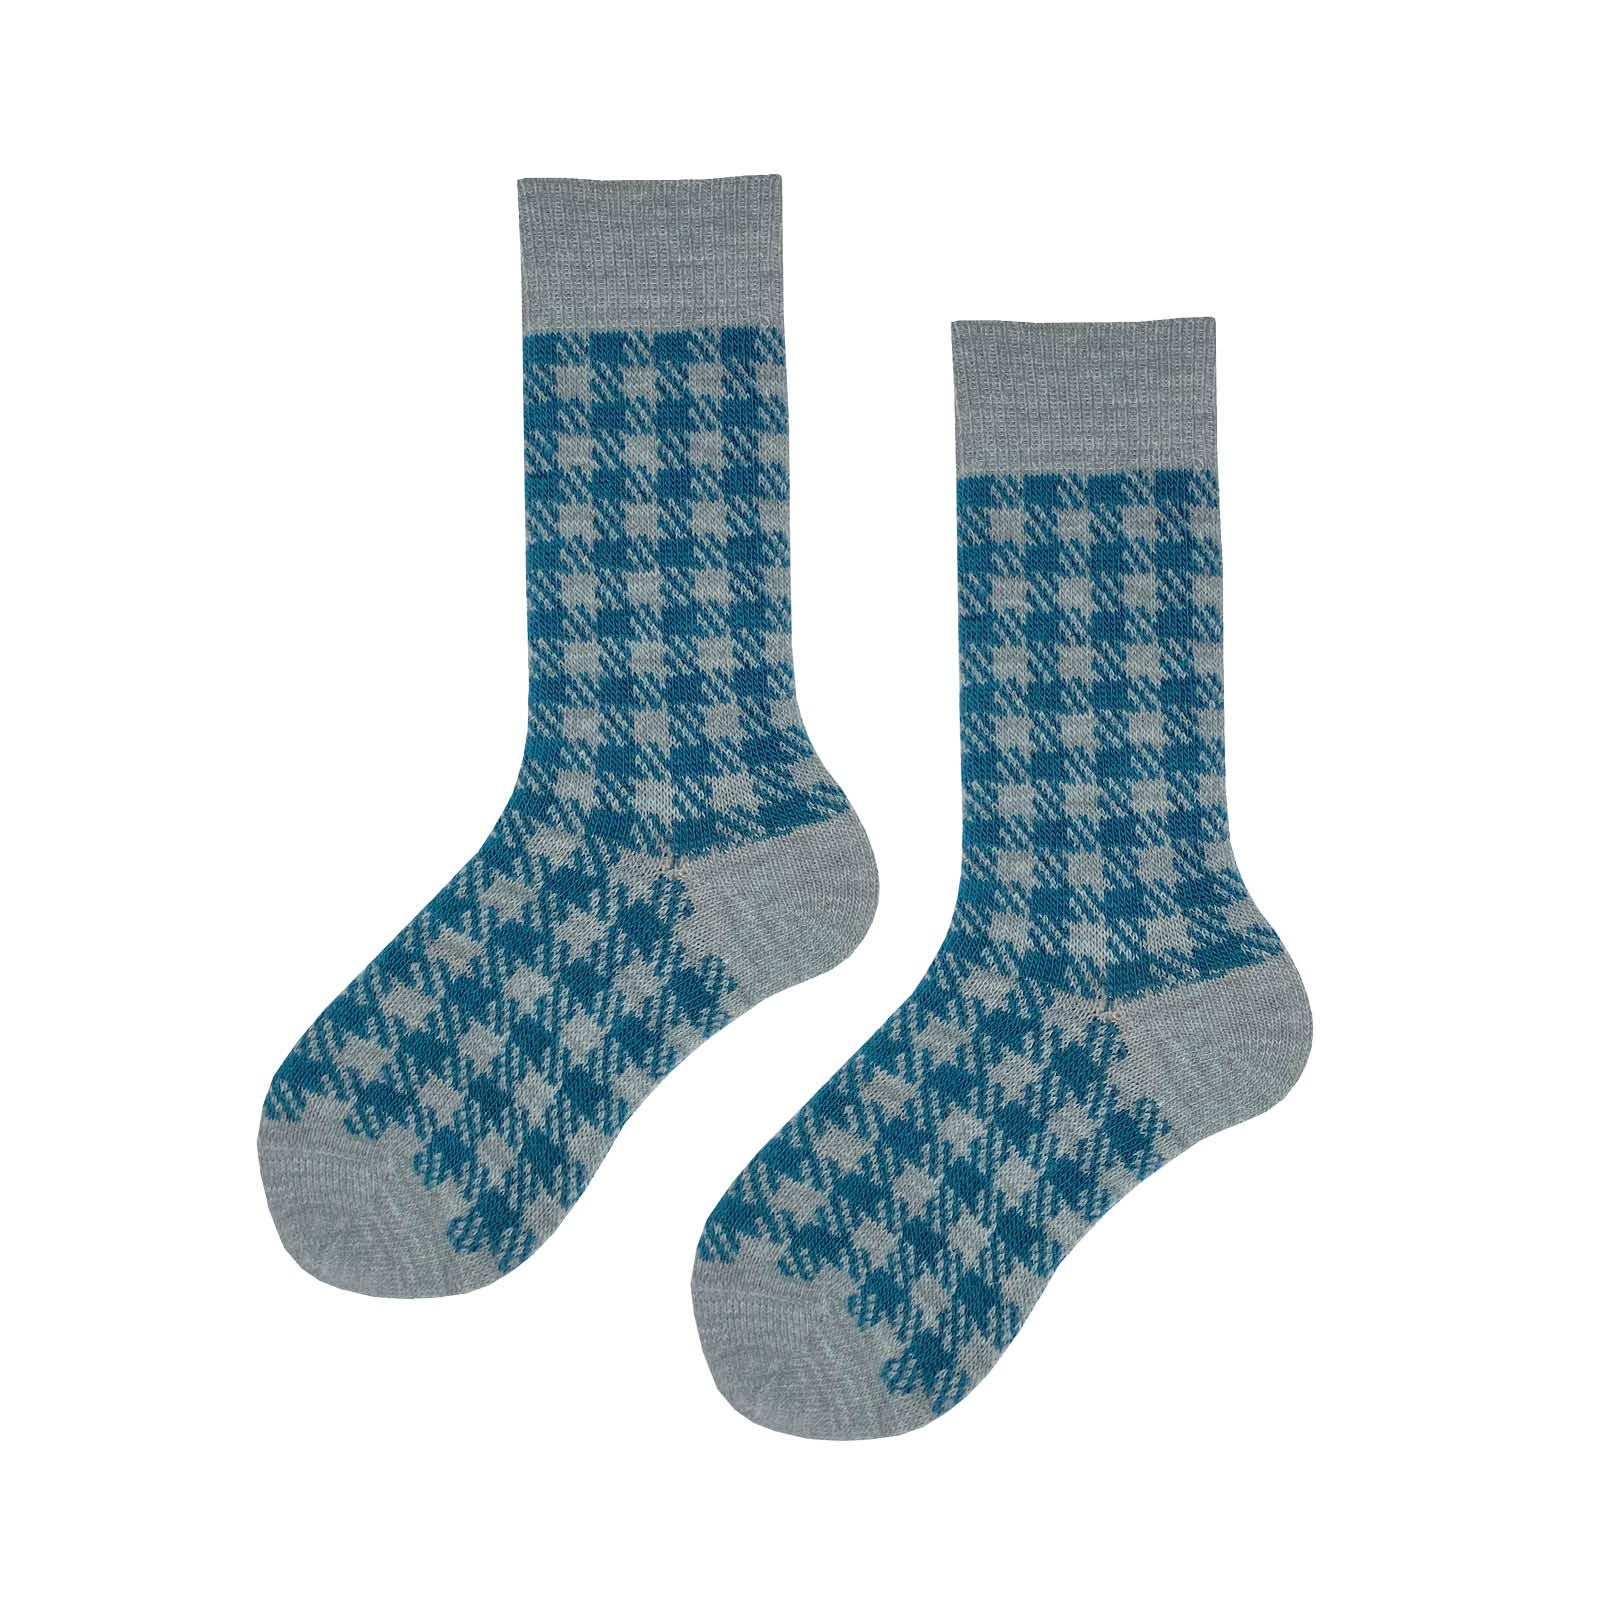 HUDSON Damen GLENCHECK -  39/42 - Socken mit klassischer Glencheck-Musterung - Maya (Blau)